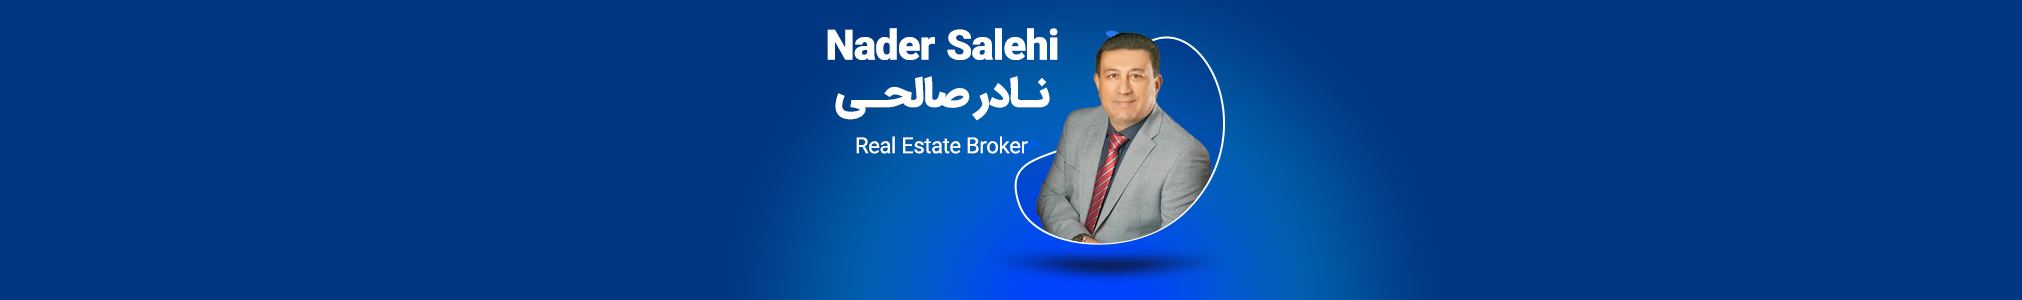 Nader Salehi